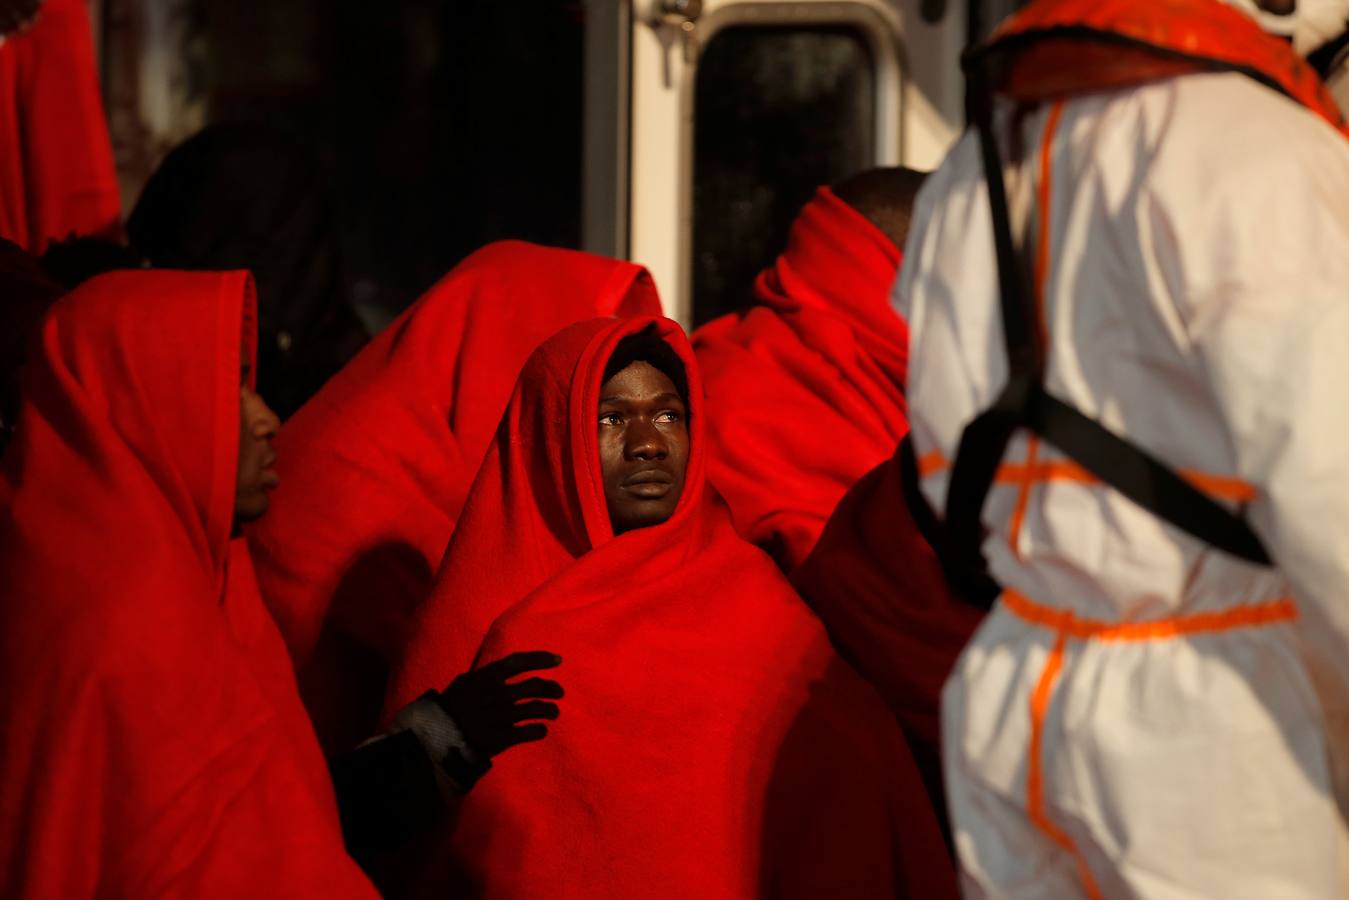 Un total de 54 inmigrantes, 15 de ellos mujeres, han llegado al puerto de Málaga trasladados por la embarcación Salvamar Alnitak tras haber sido rescatados de una patera en el mar de Alborán.